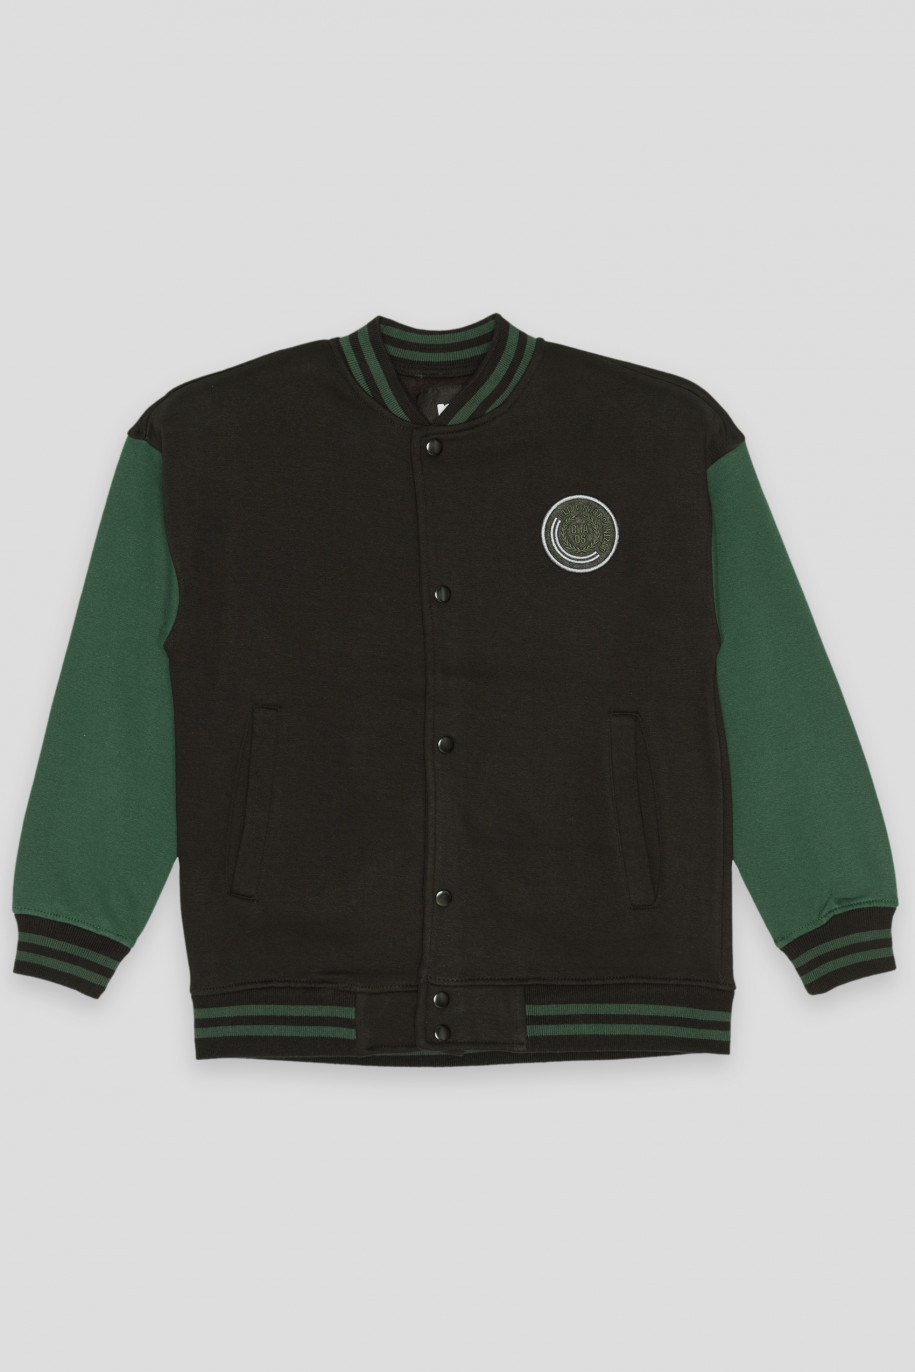 Czarna rozpinana bluza bejsbolówka z zielonymi rękawami - 37510